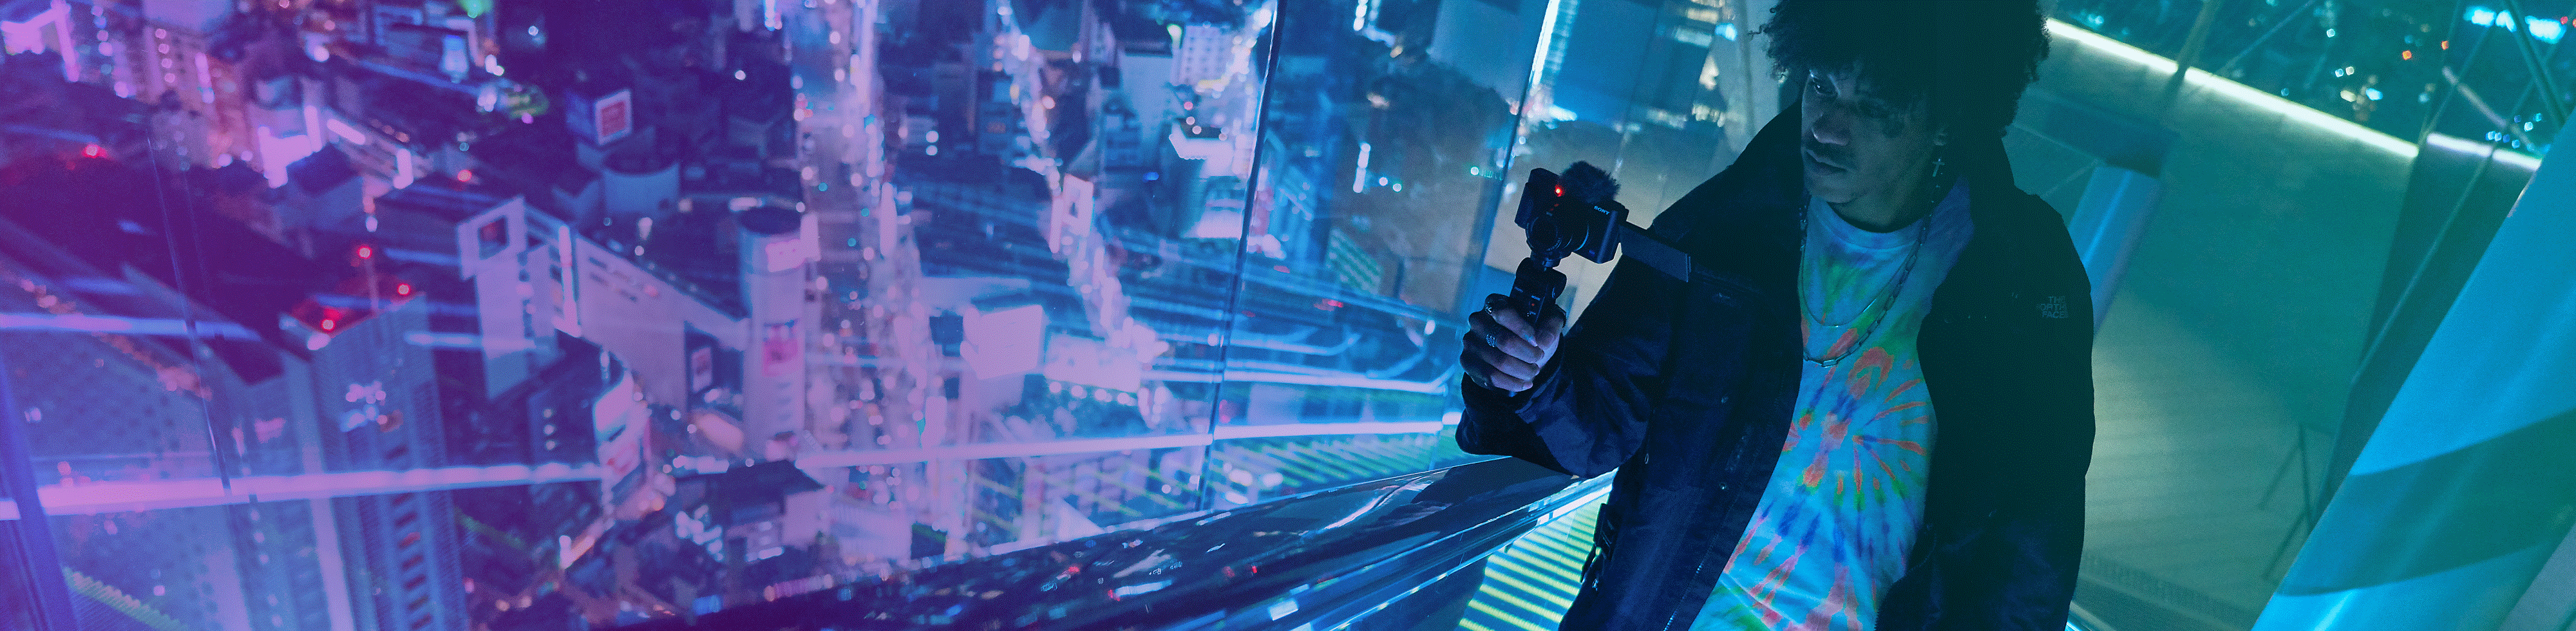 Muškarac snima noćni prizor u neboderu